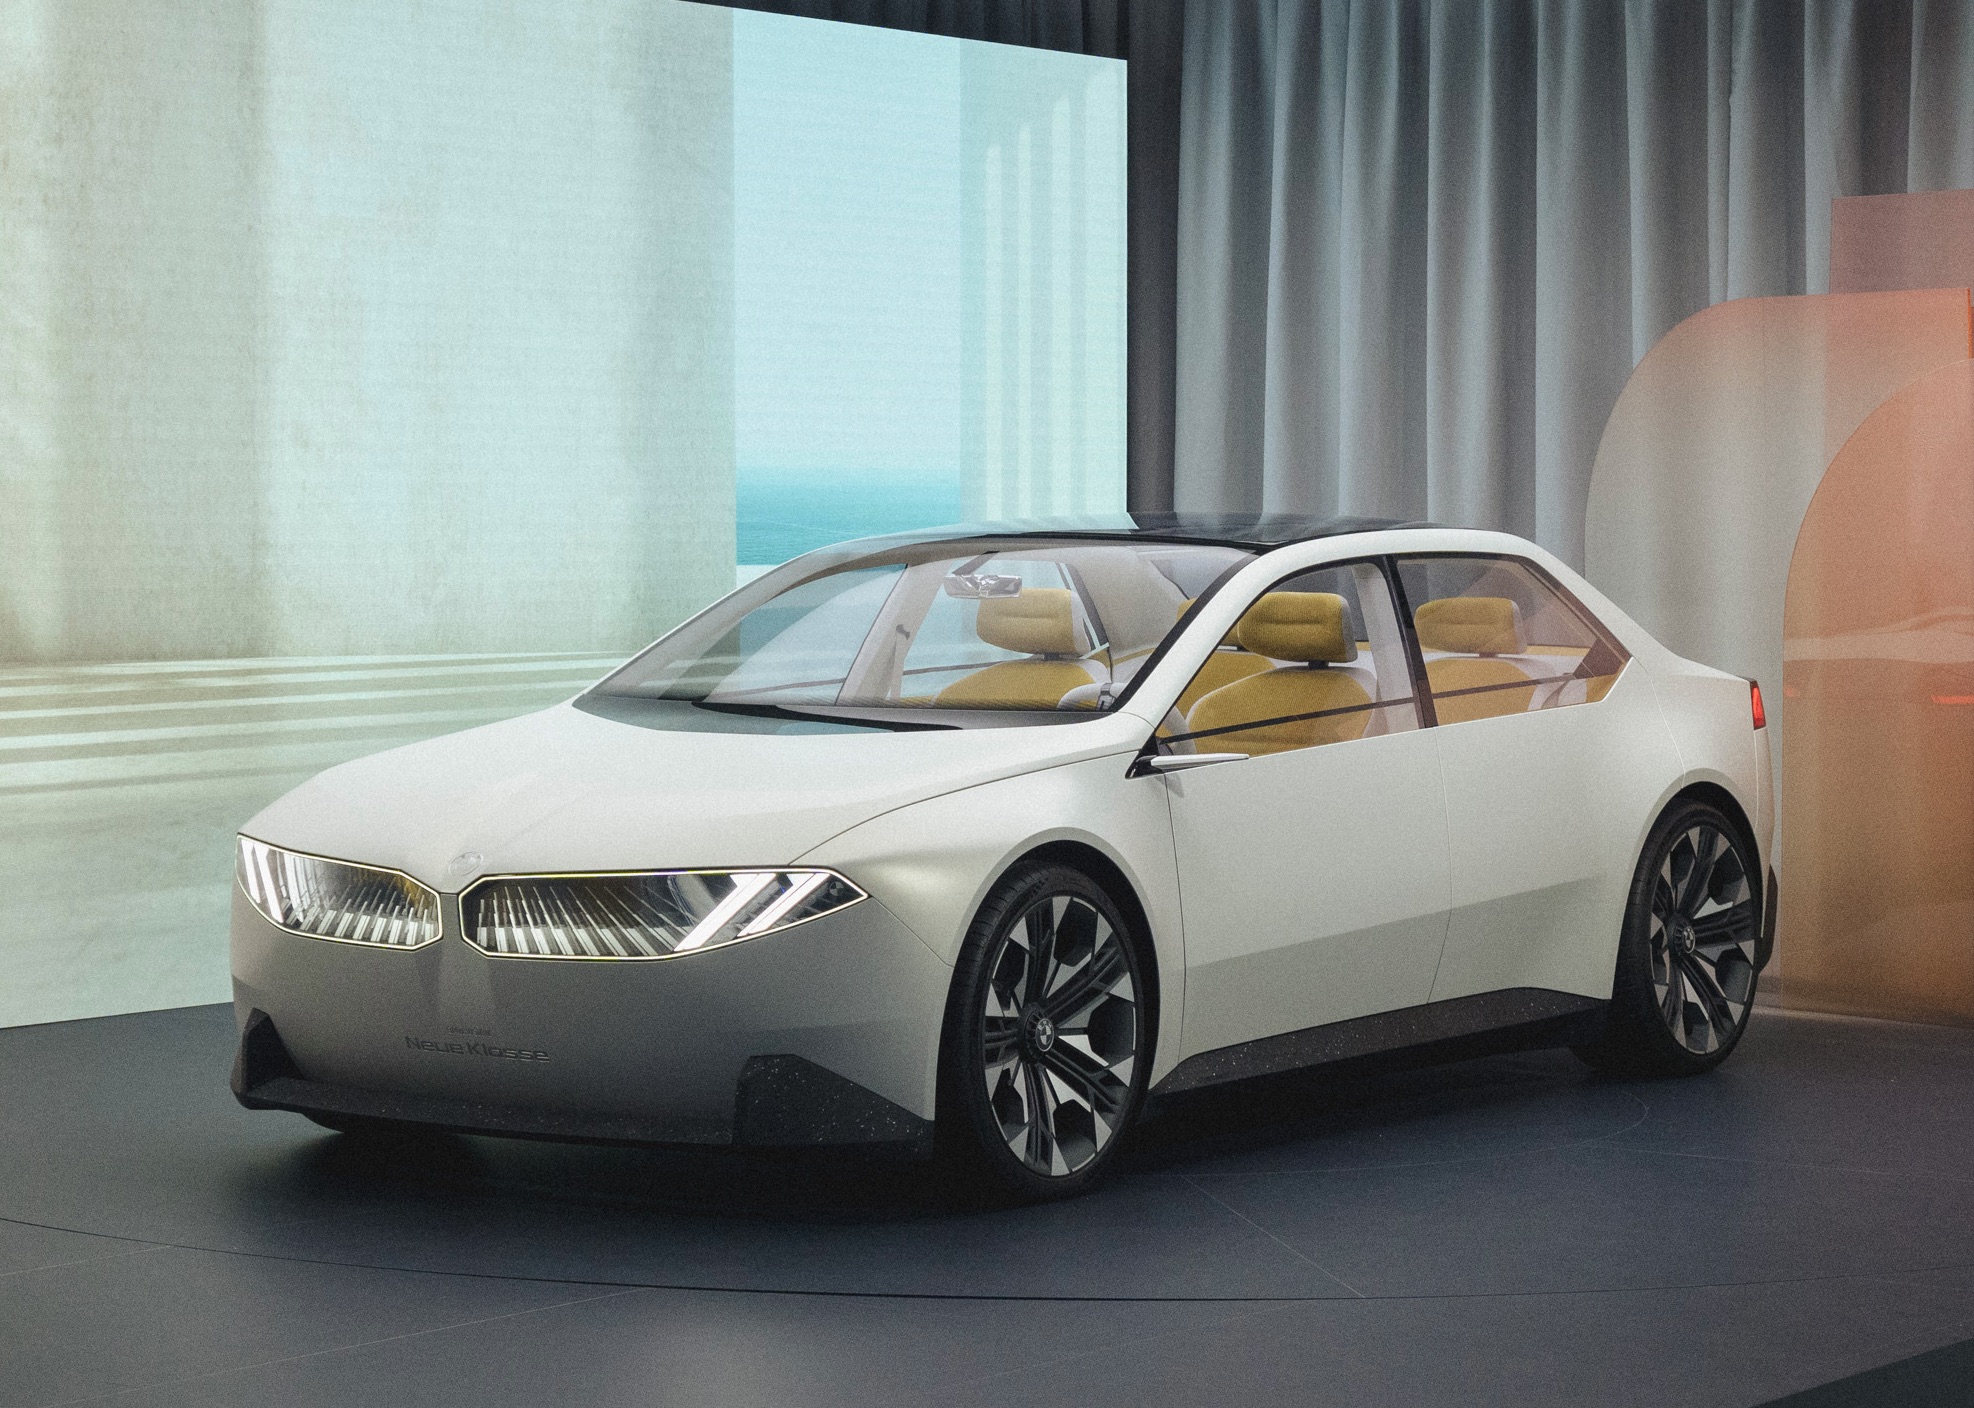 BMW Neue Klasse: So will sich der bayerische Autobauer in Zukunft aufstellen